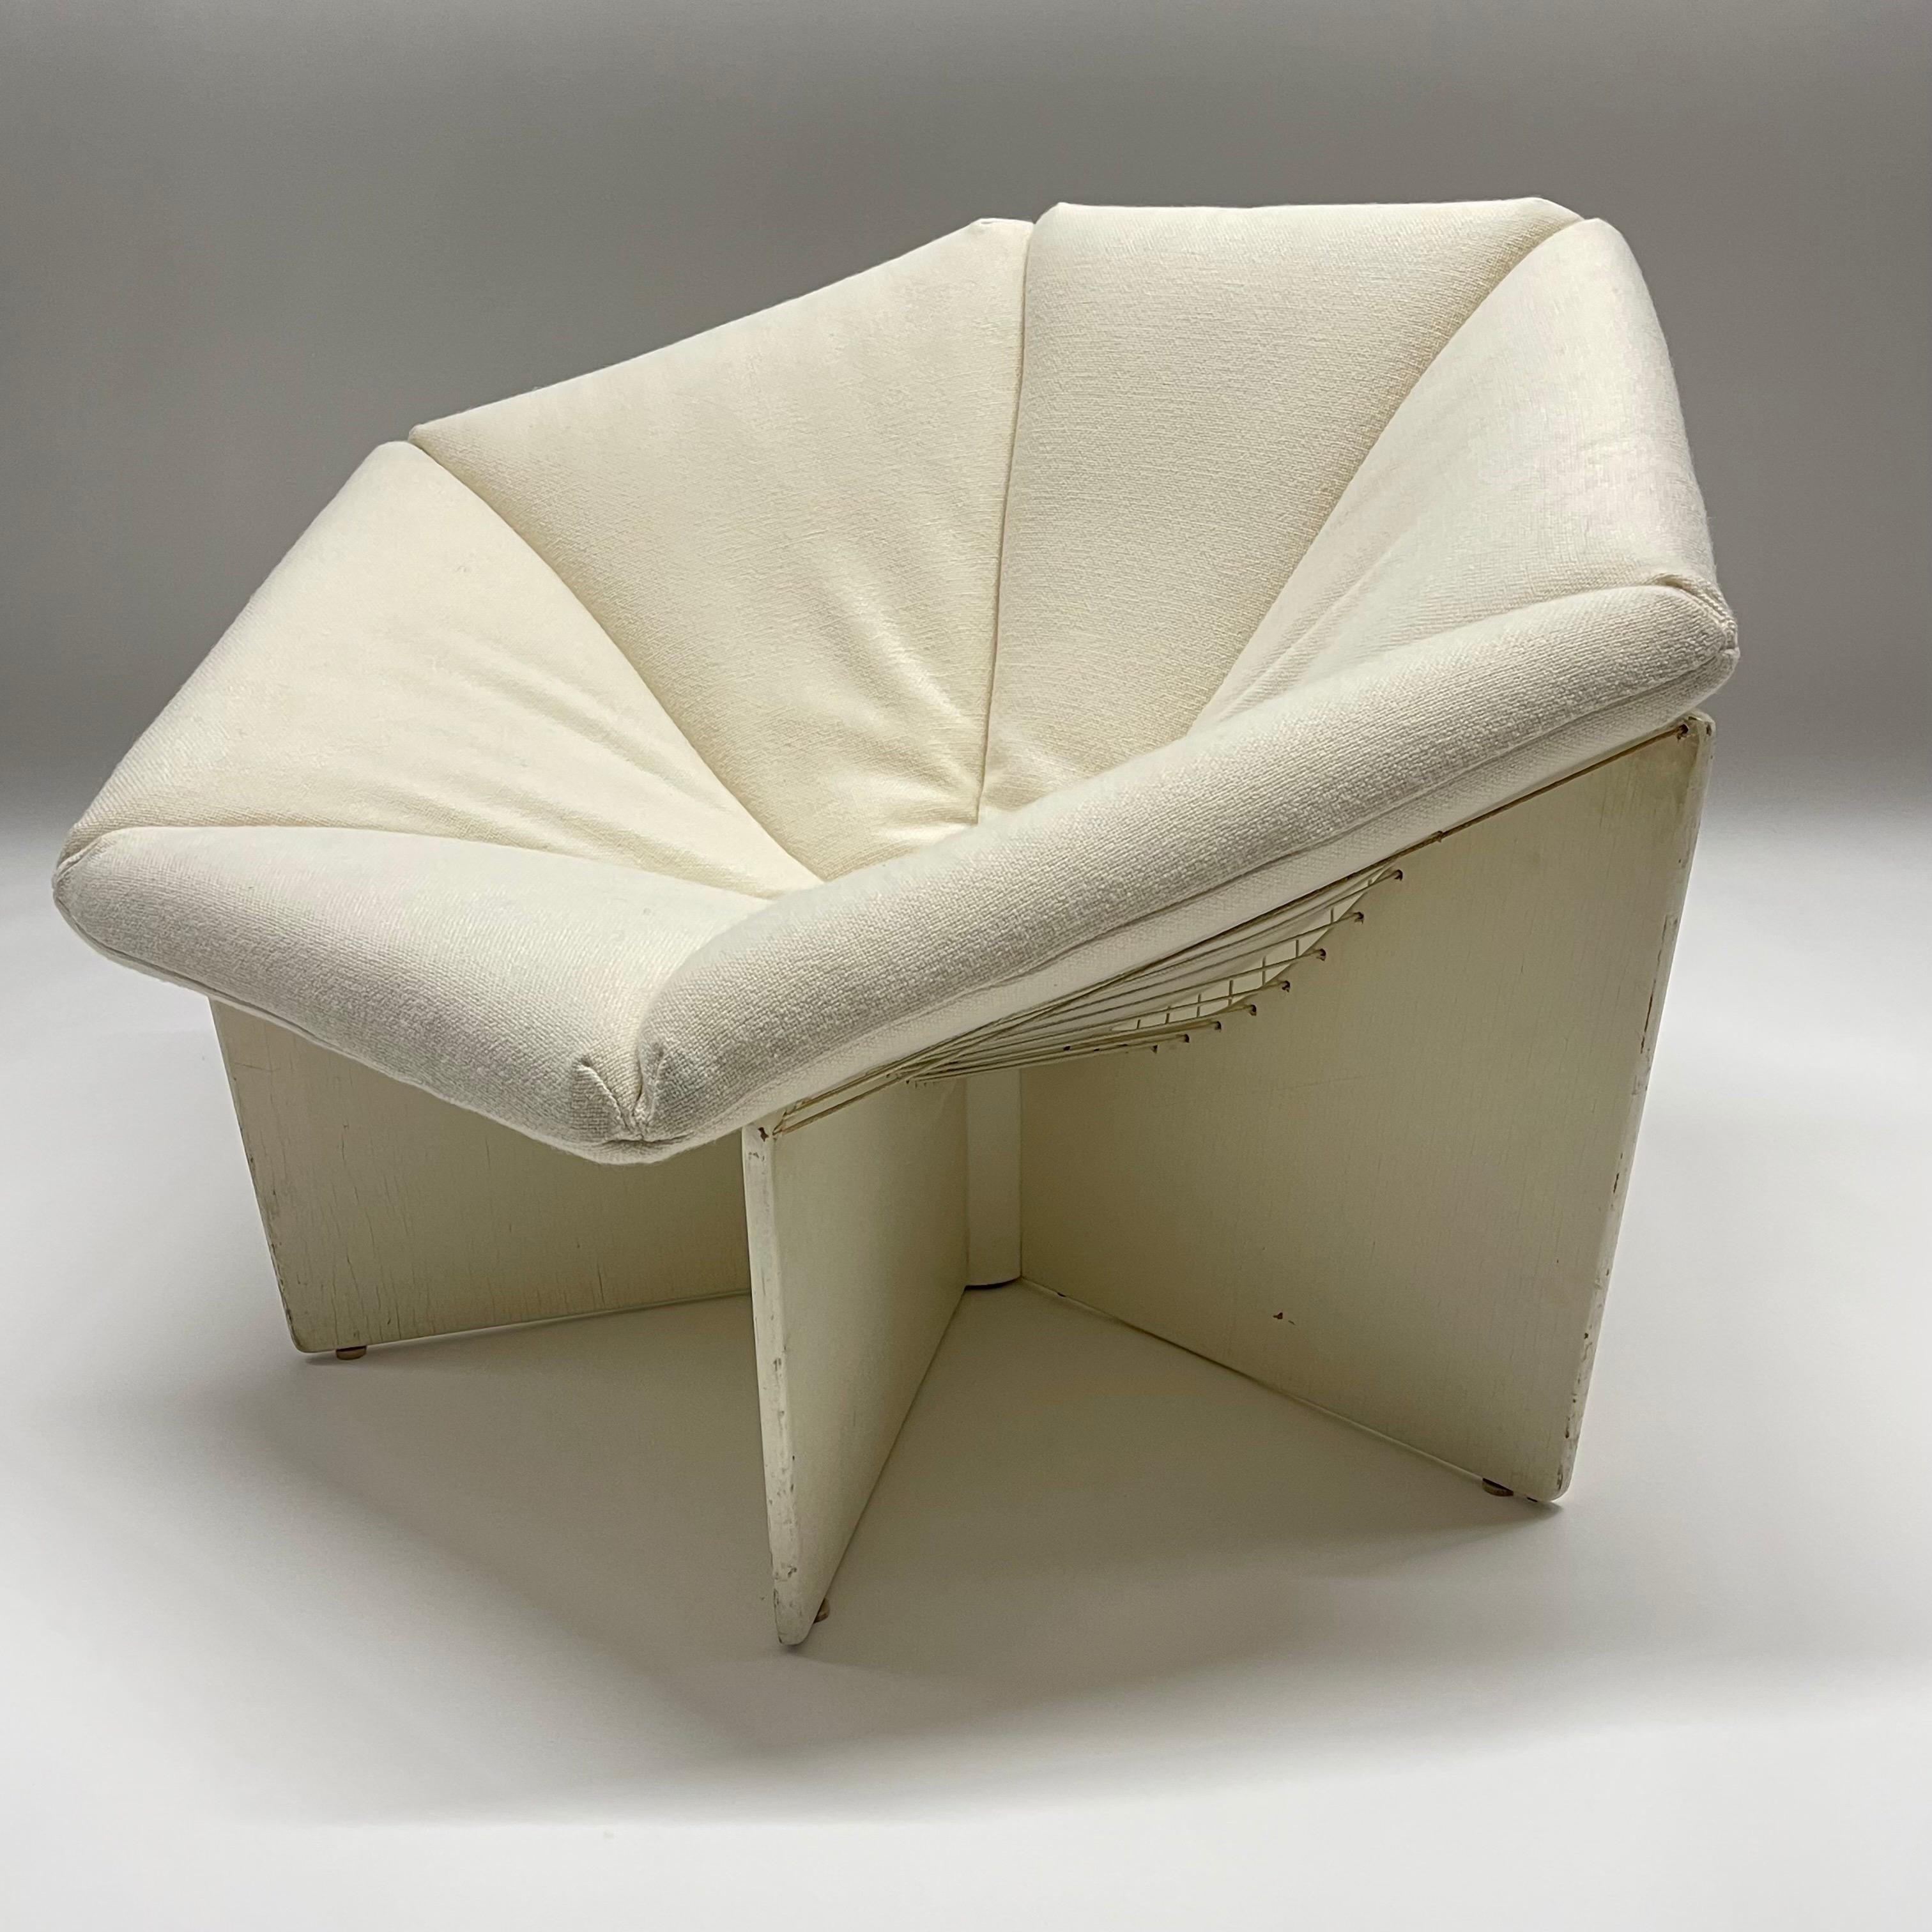 Außergewöhnlicher Loungesessel im Design des 20. Jahrhunderts, Modell F678, auch bekannt als Spider Lounge Chair. Dieses Stück wurde von Pierre Paulin entworfen und von Artifort Furniture Company in den Niederlanden um 1965 hergestellt. Die